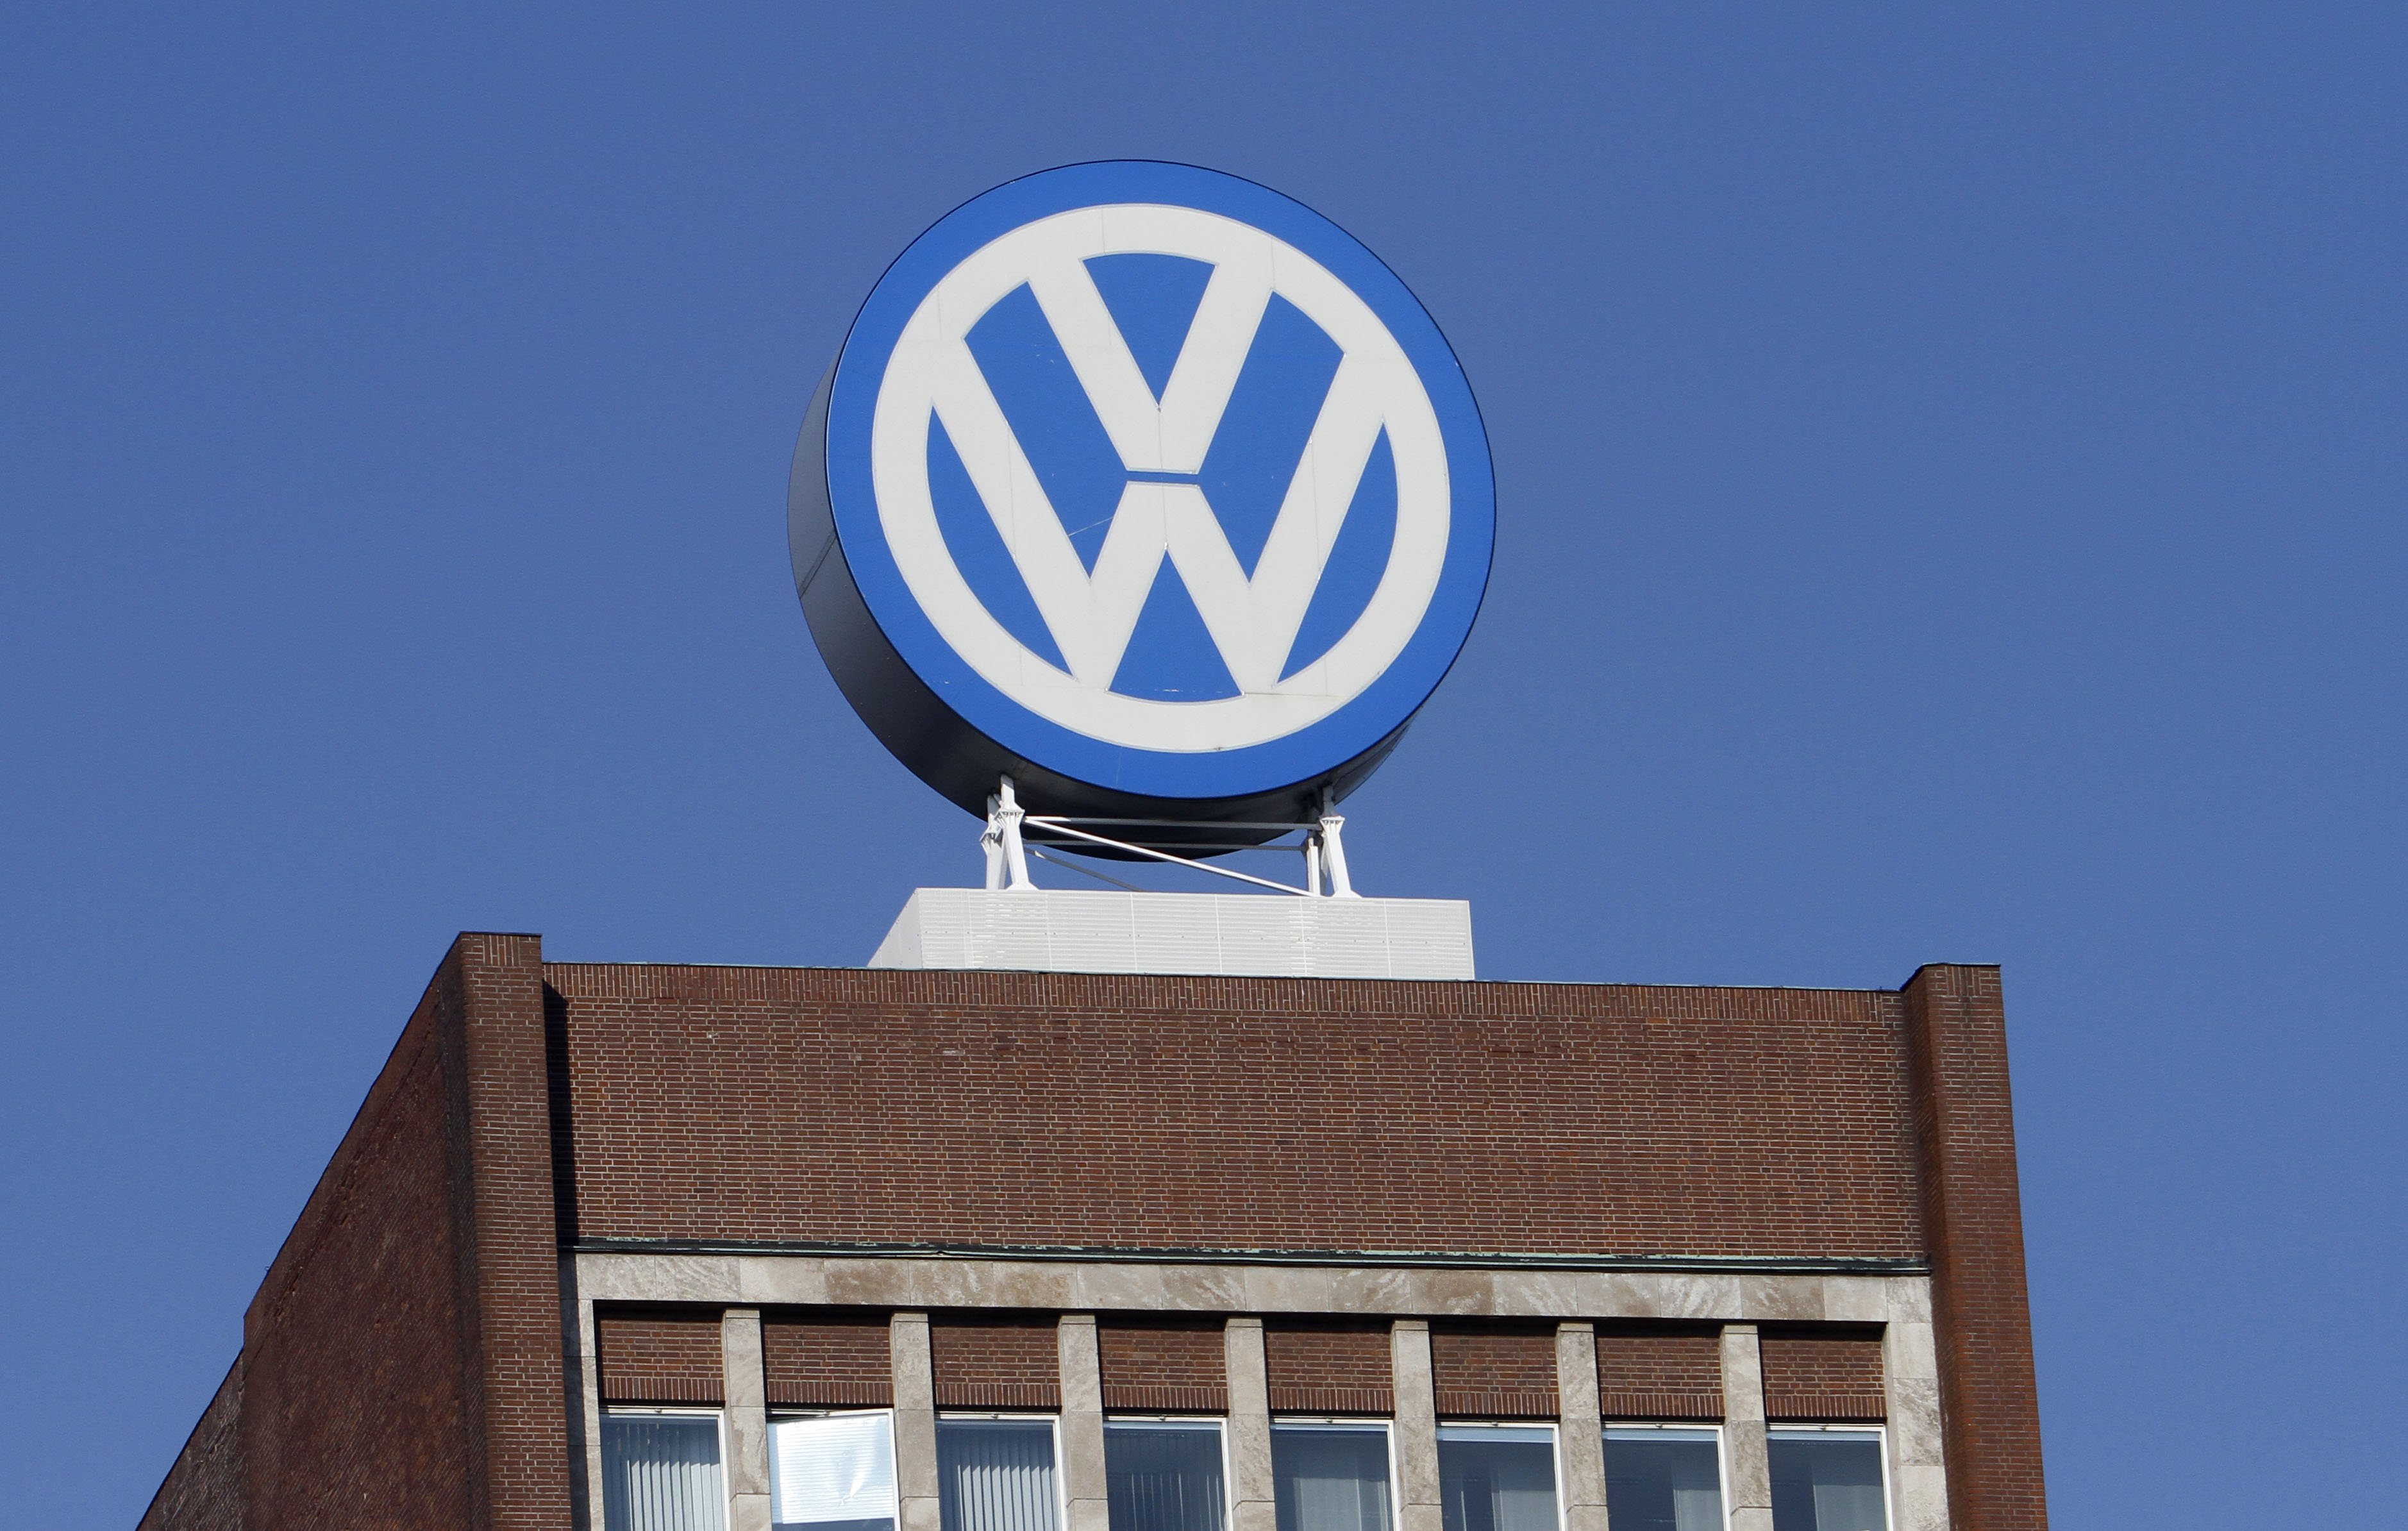 Det var svenska delen av bilföretaget Volkswagen som skickade ut ett erbjudande till samtliga partier under valrörelsen.